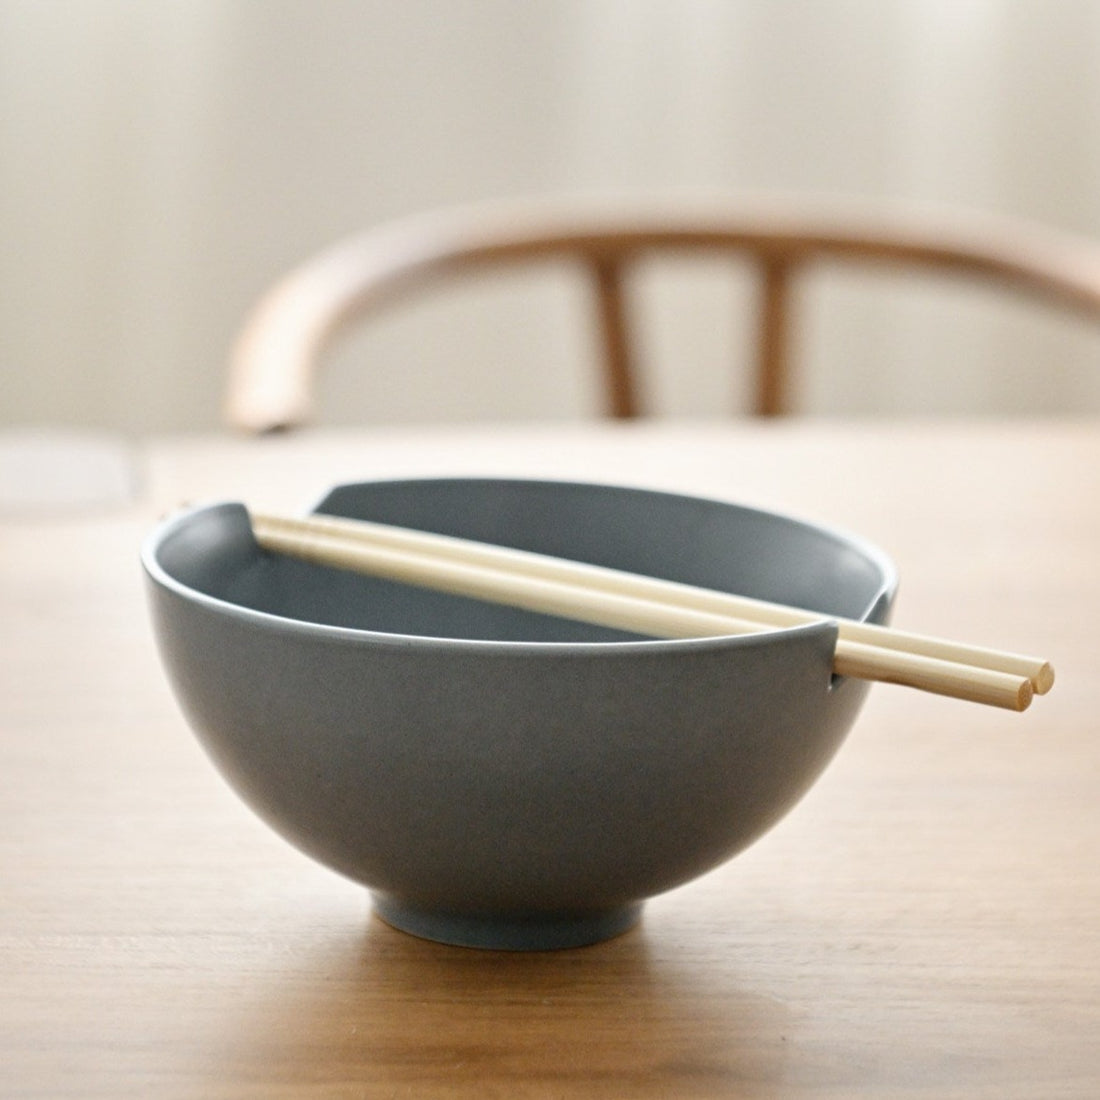 Ikana Iron Bowl With Chopsticks